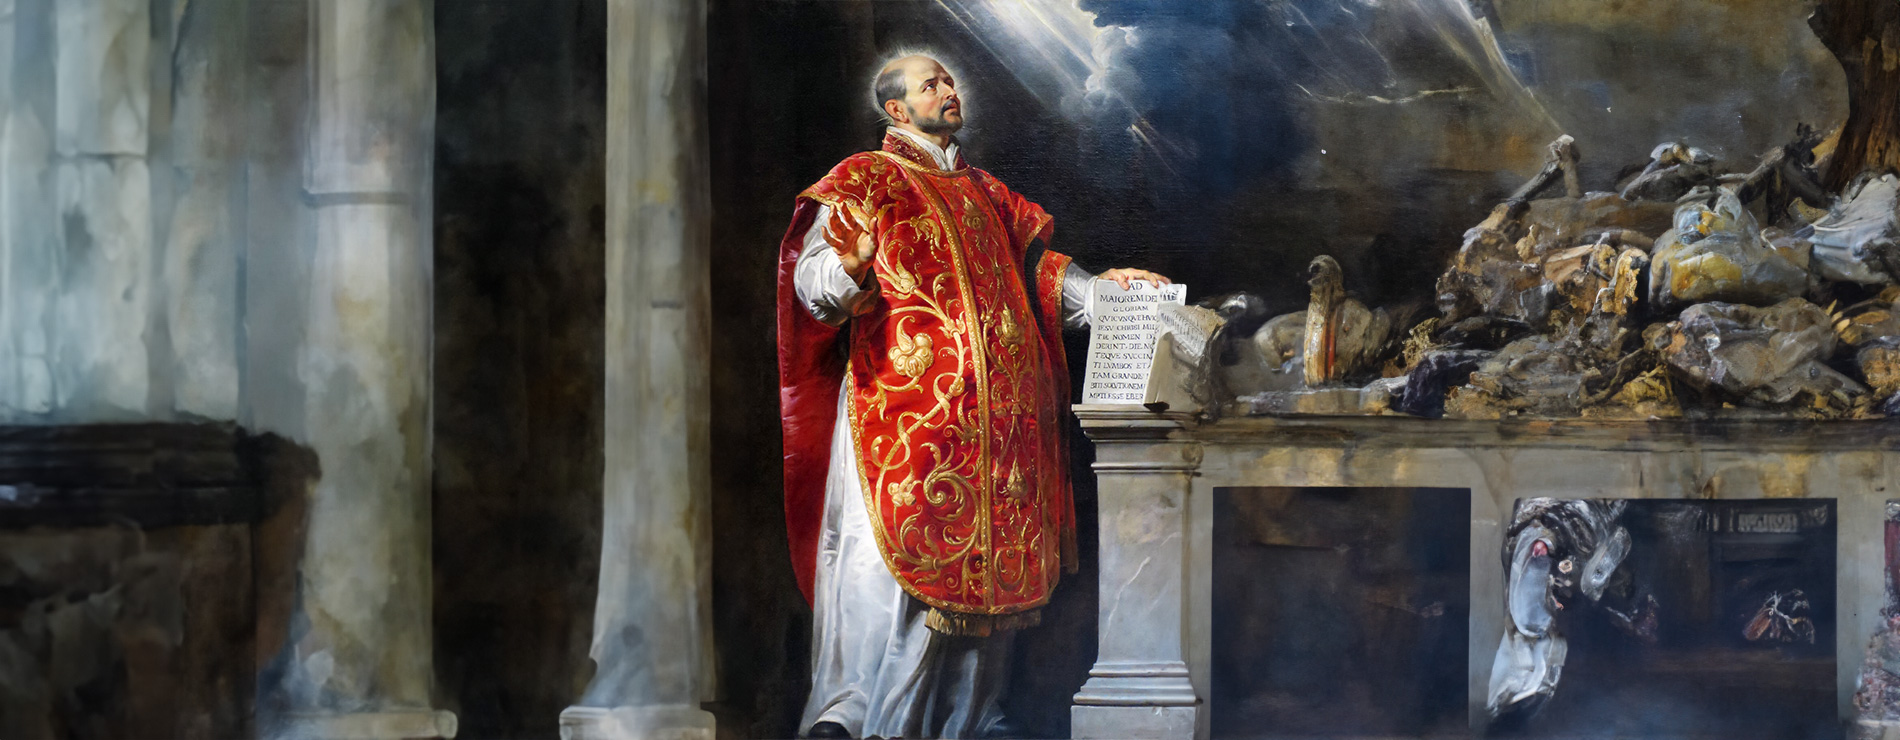 Sn Ignacio de Loyola